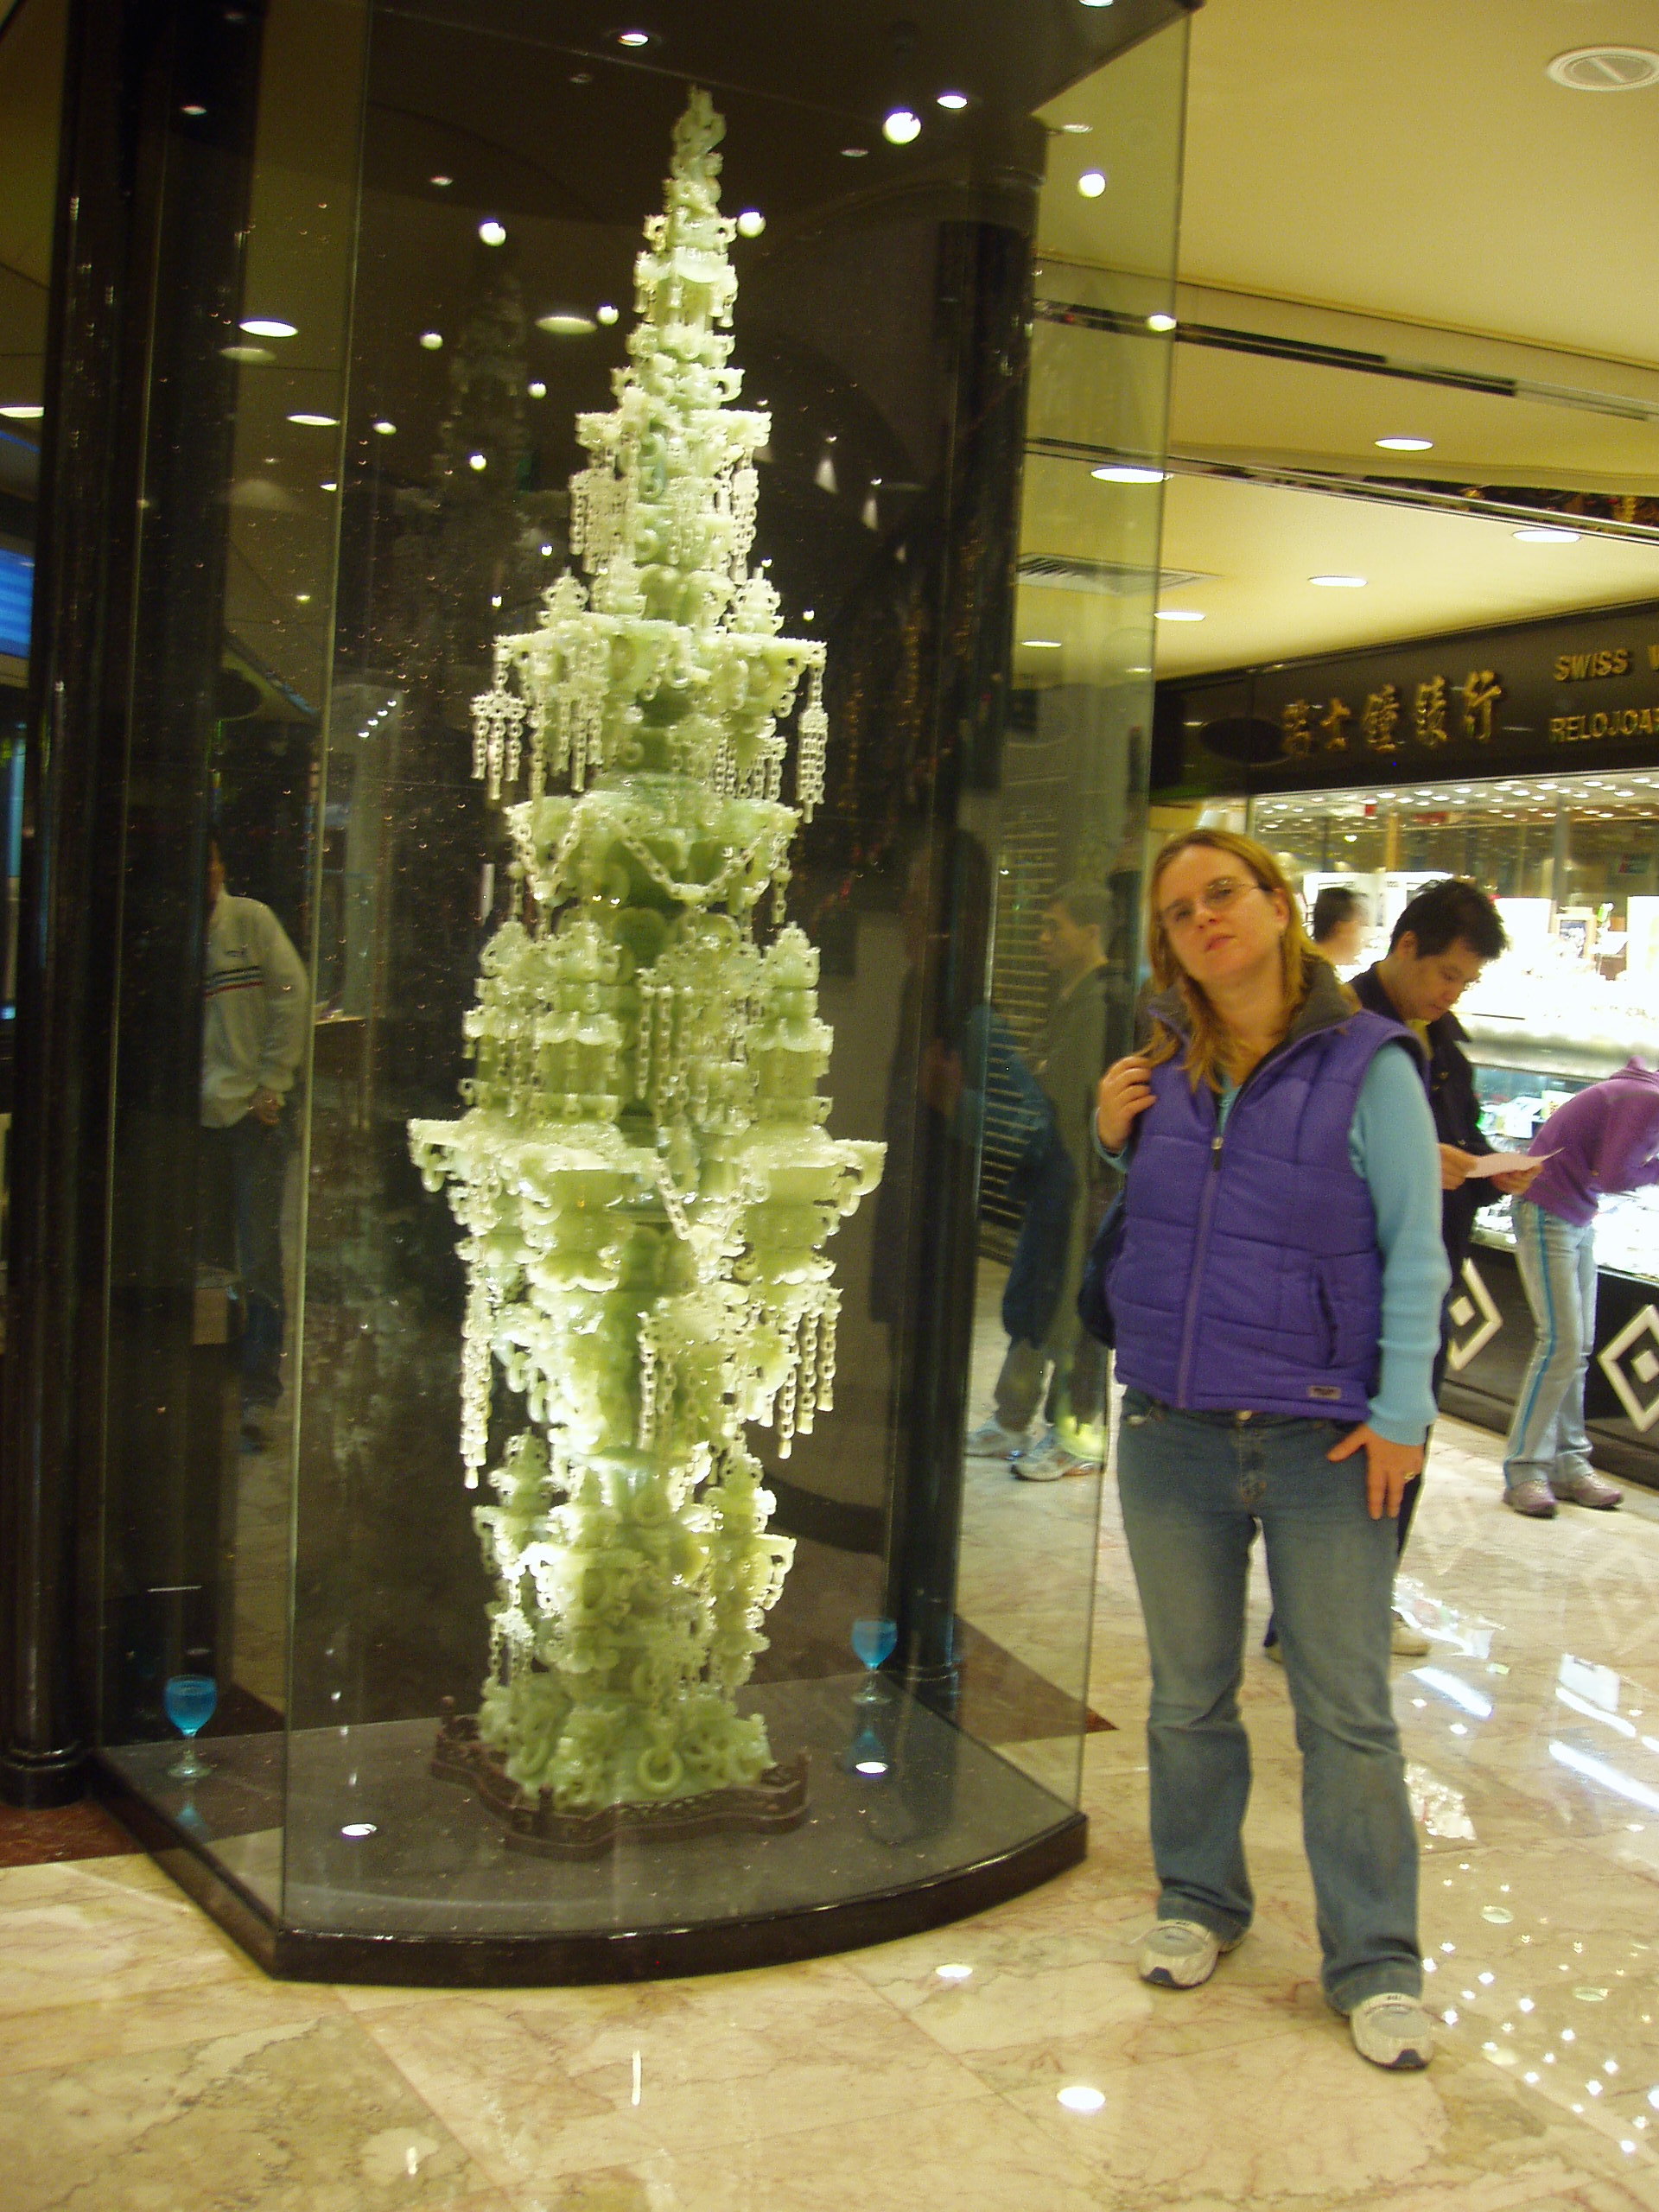 Jade sculpture in Macao (December 2006)